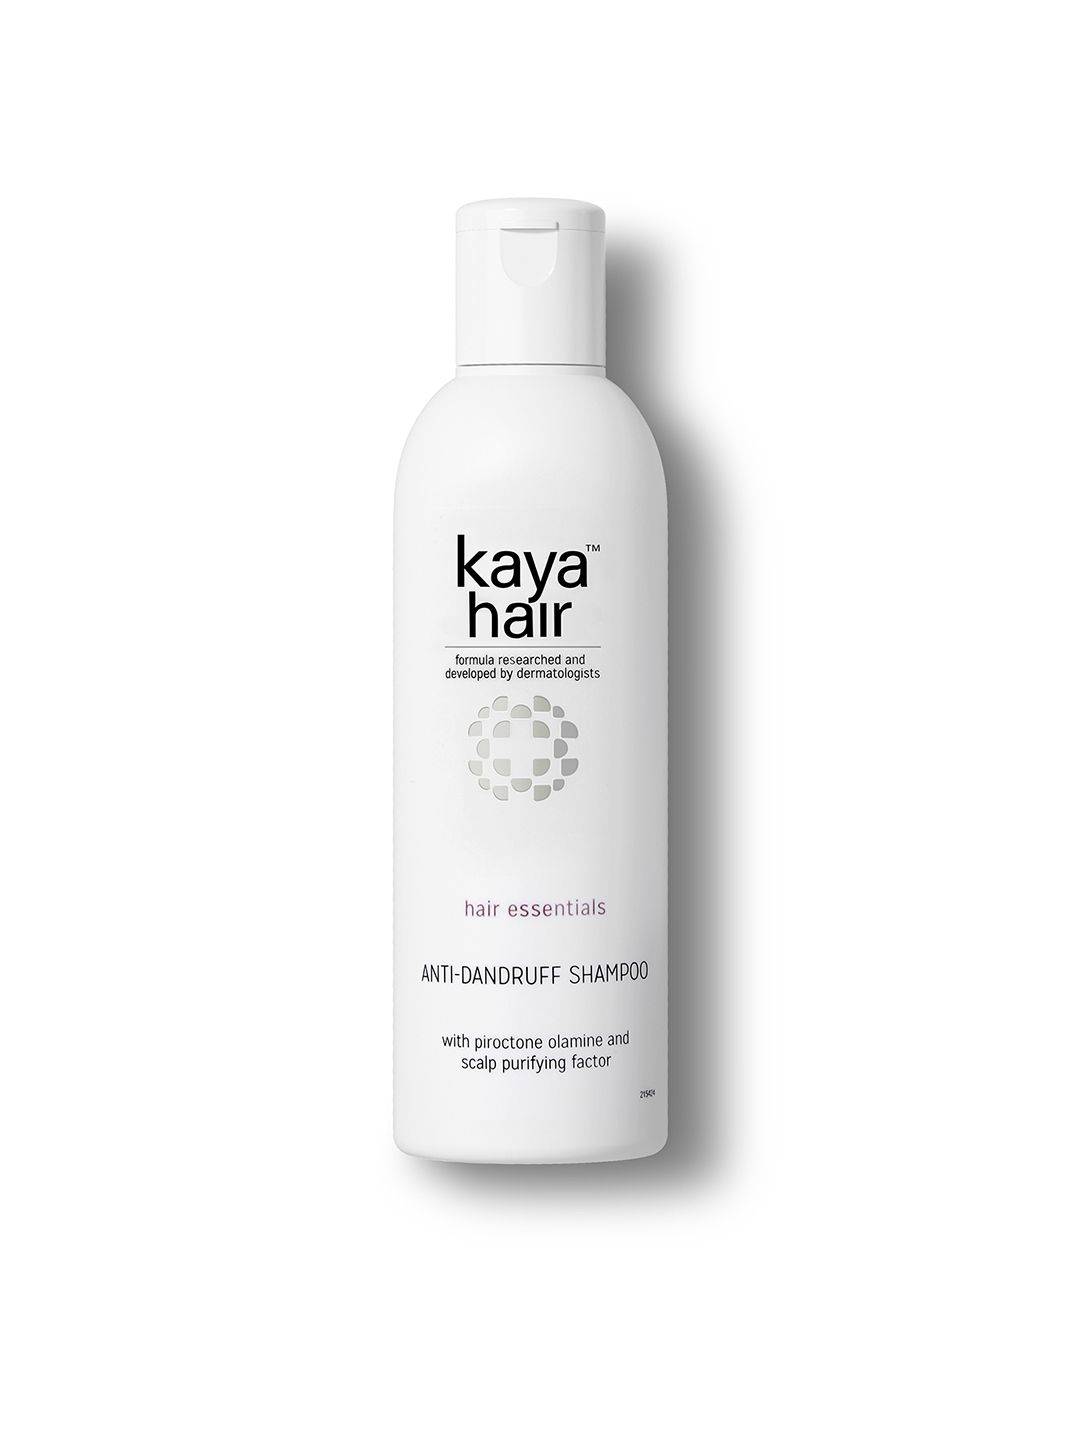 Kaya Anti-Dandruff Shampoo - Nourishing 200ml Price in India